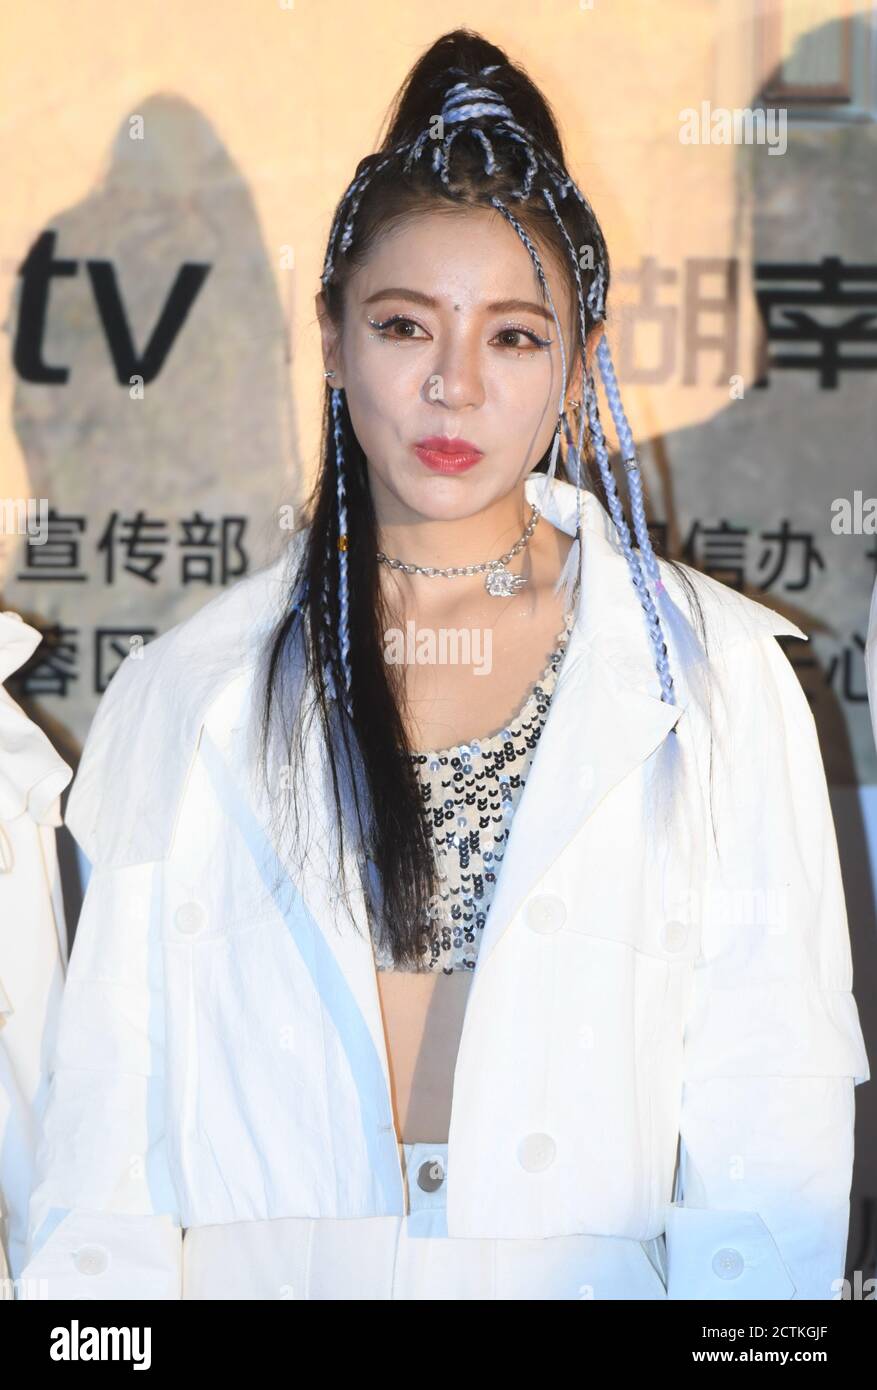 Il cantante cinese Ding Dang partecipa all'evento MGTV Forever Young Night nella città di Changsha, nella provincia di Hunan della Cina meridionale, il 10 agosto 2020. Foto Stock